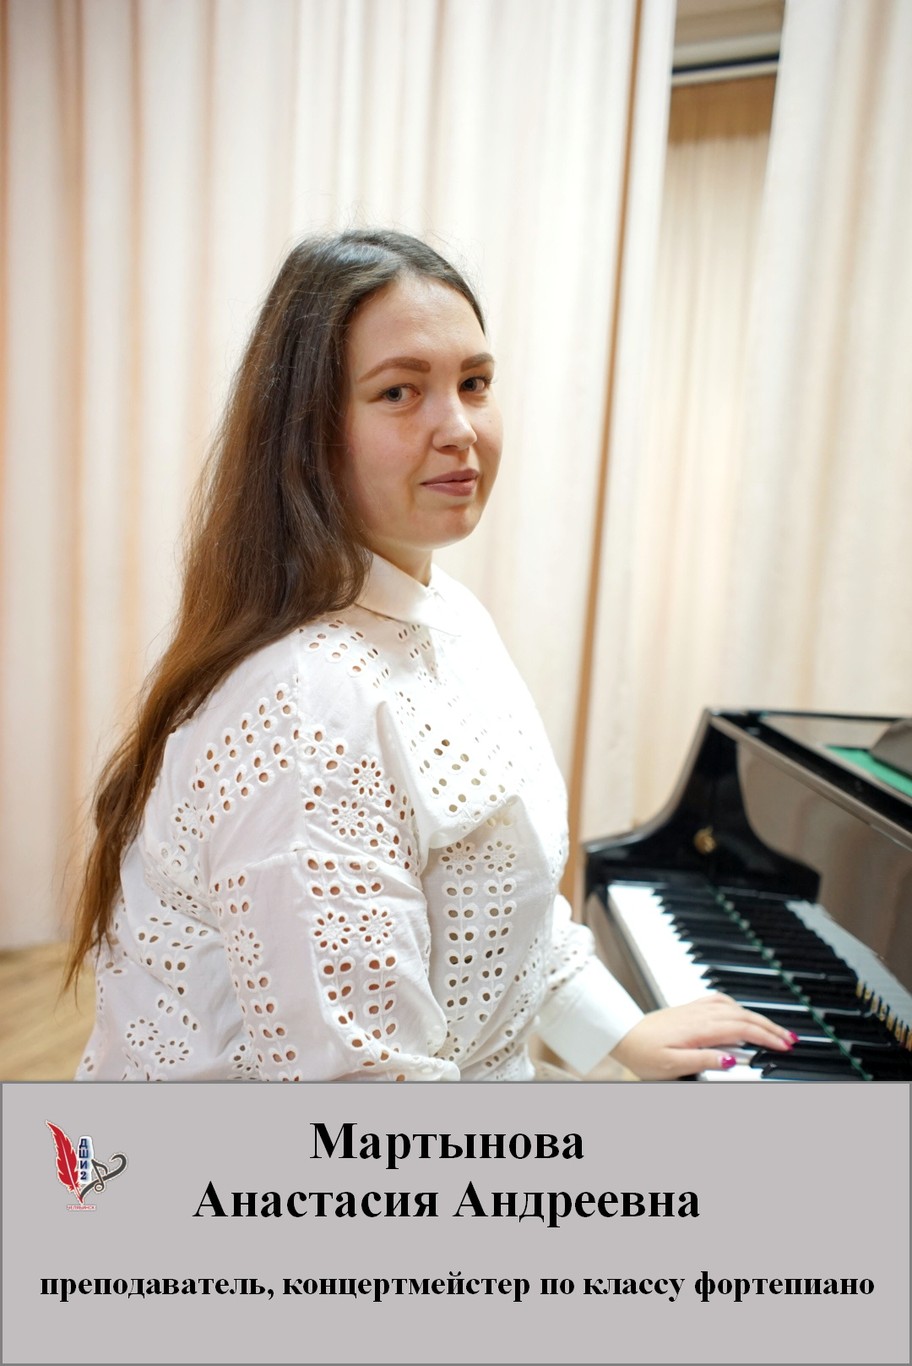 Мартынова Анастасия Андреевна